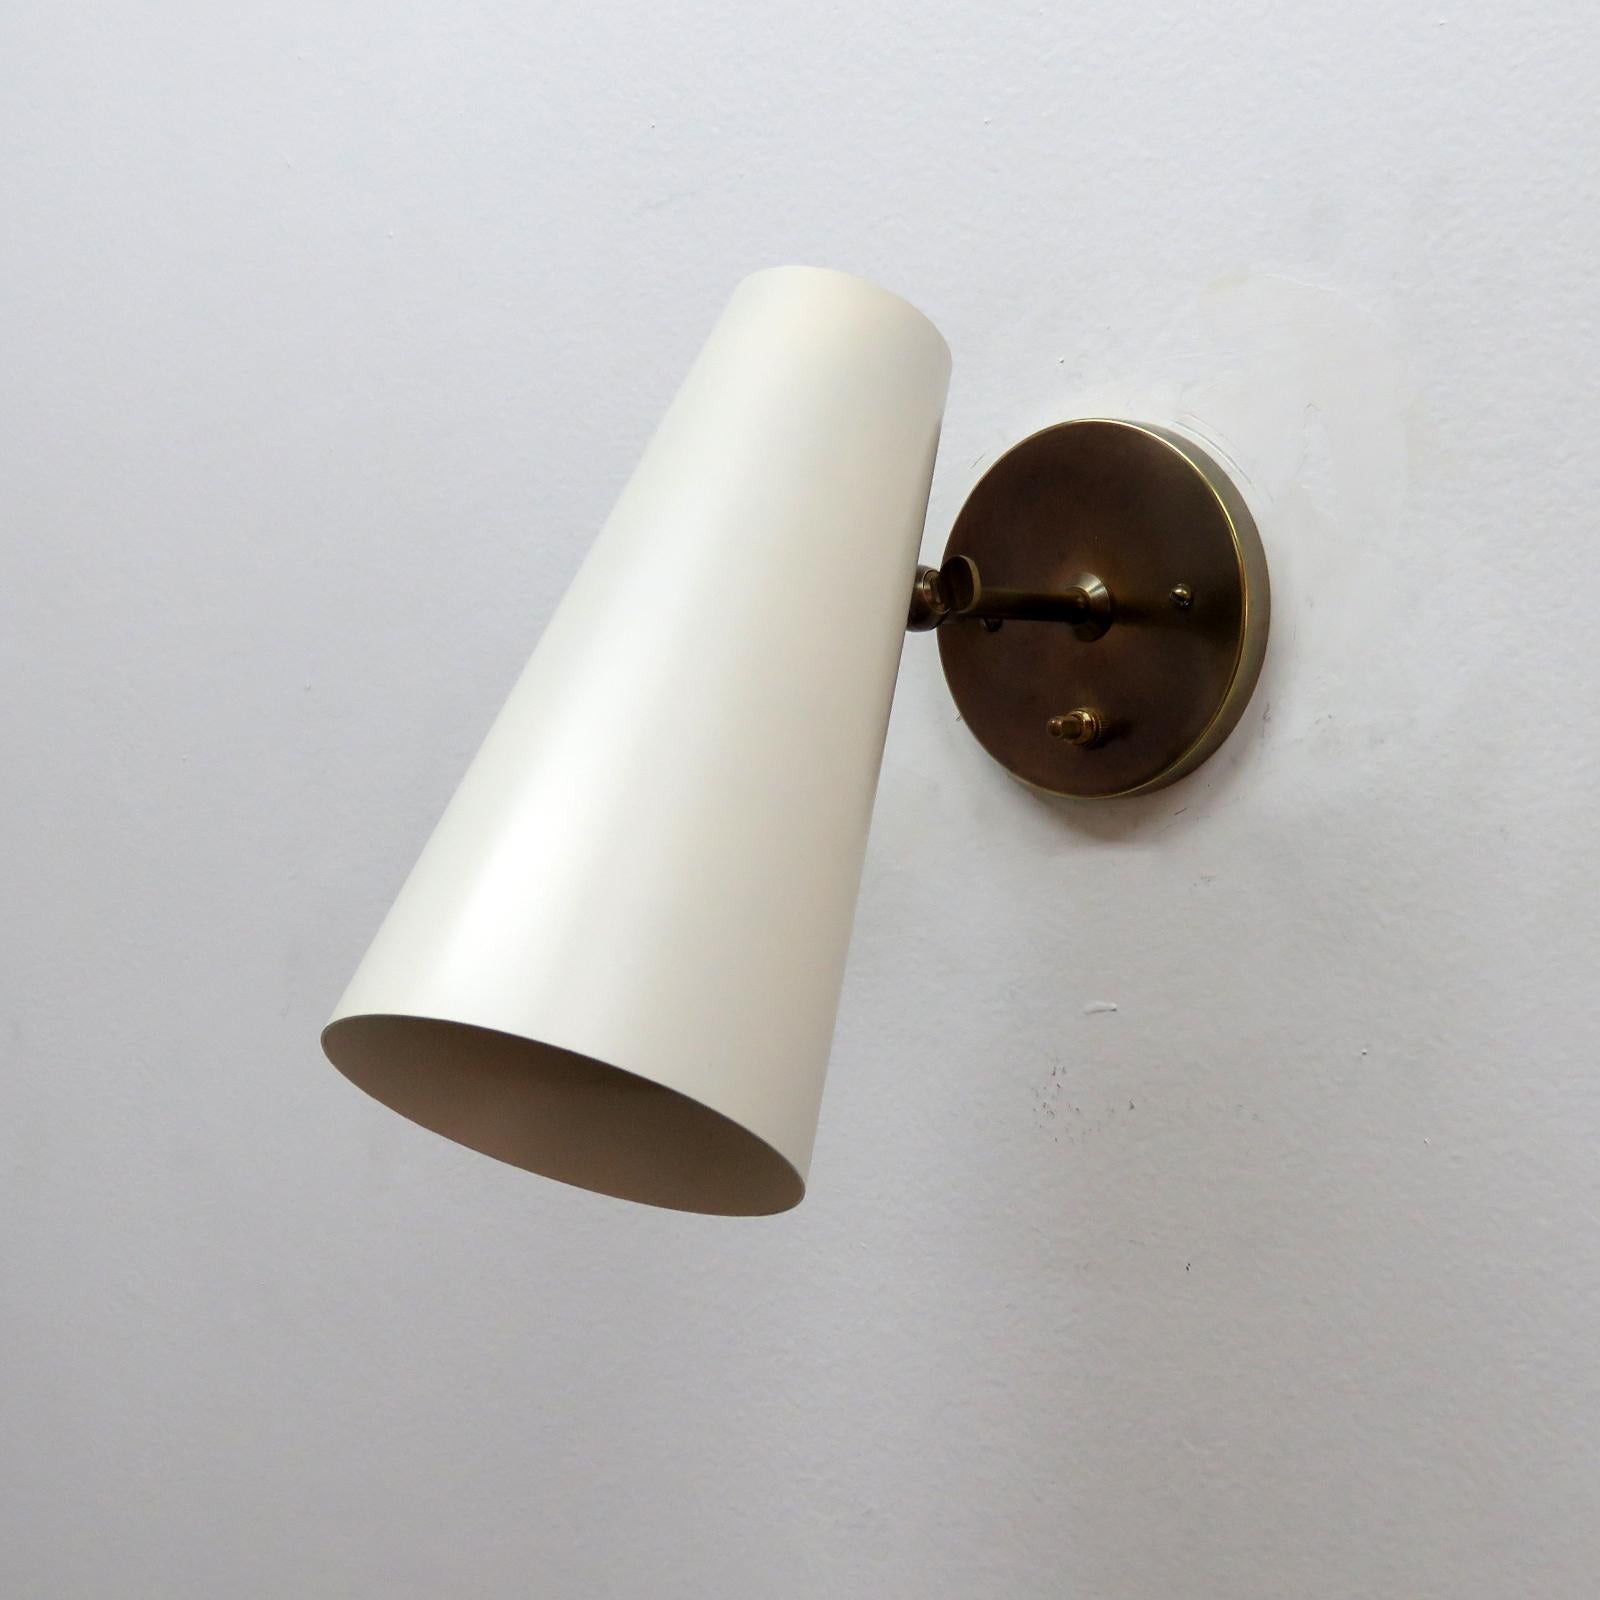 Elégantes appliques articulées 'Copa' conçues par Gallery L7, fabriquées et finies à la main à Los Angeles en laiton américain avec un cône de couleur coquille d'œuf sur des ferrures en laiton vieilli, l'angle du cône peut être ajusté, interrupteur